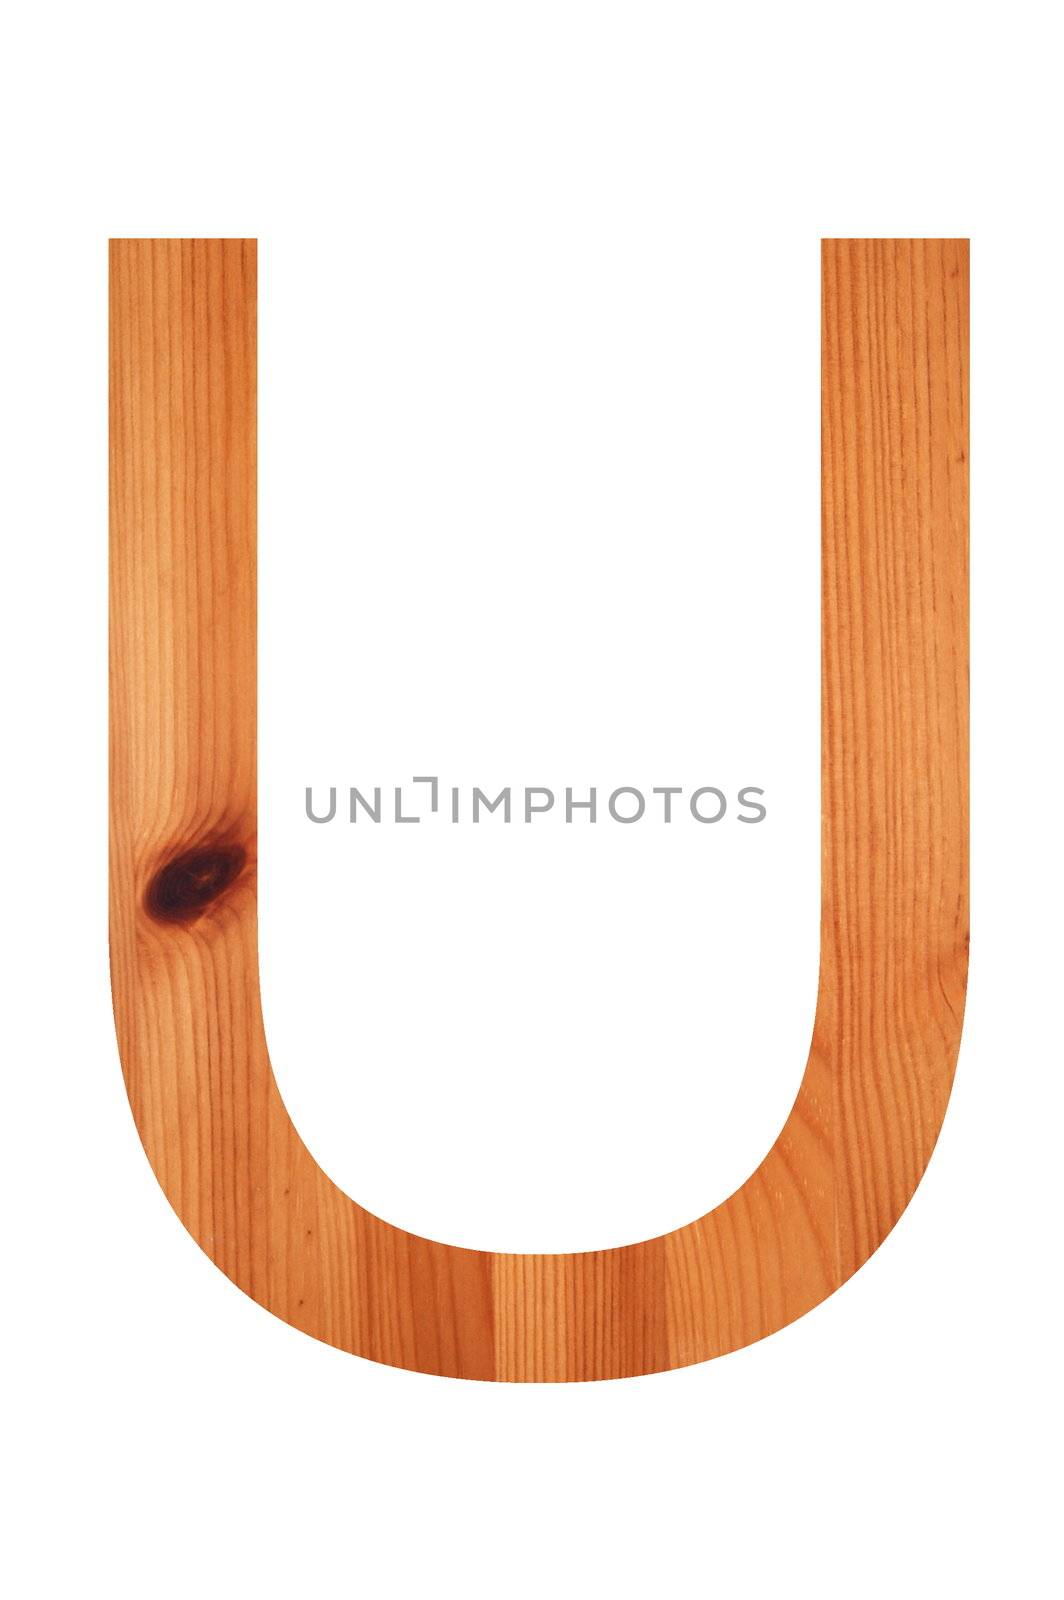 wood alphabet U by gunnar3000